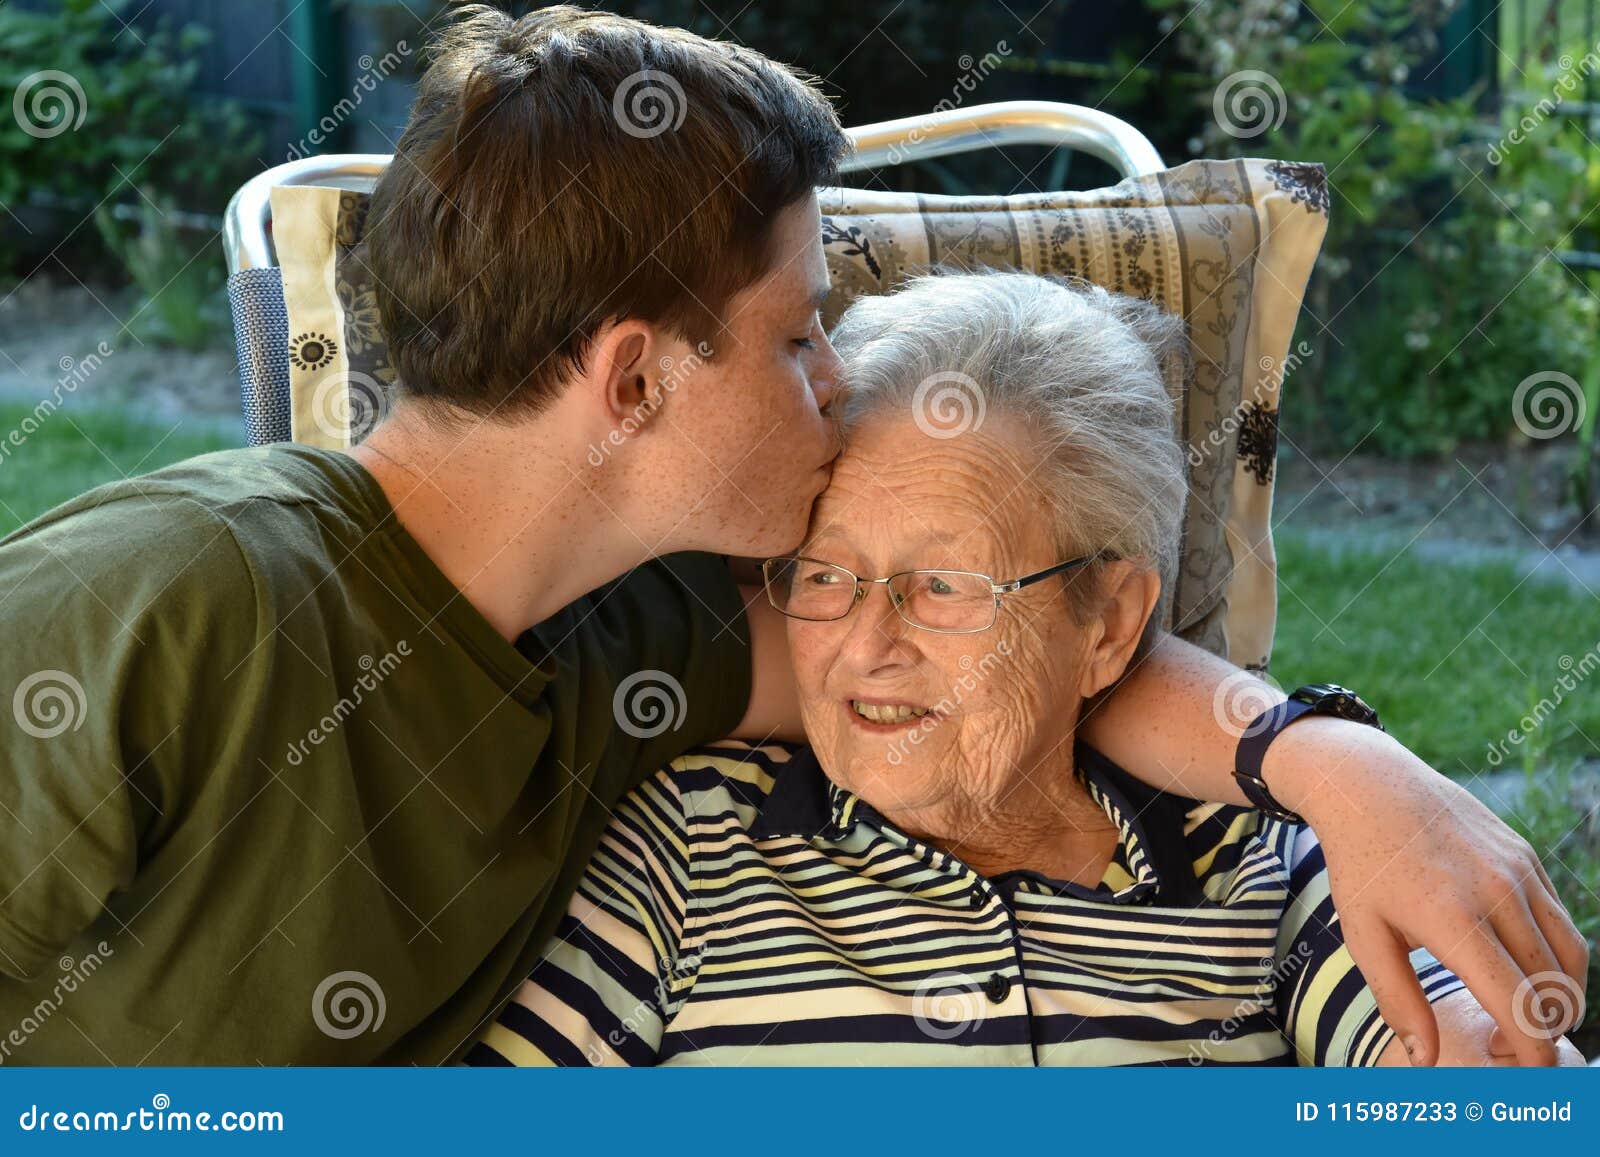 Granny Boy Pics